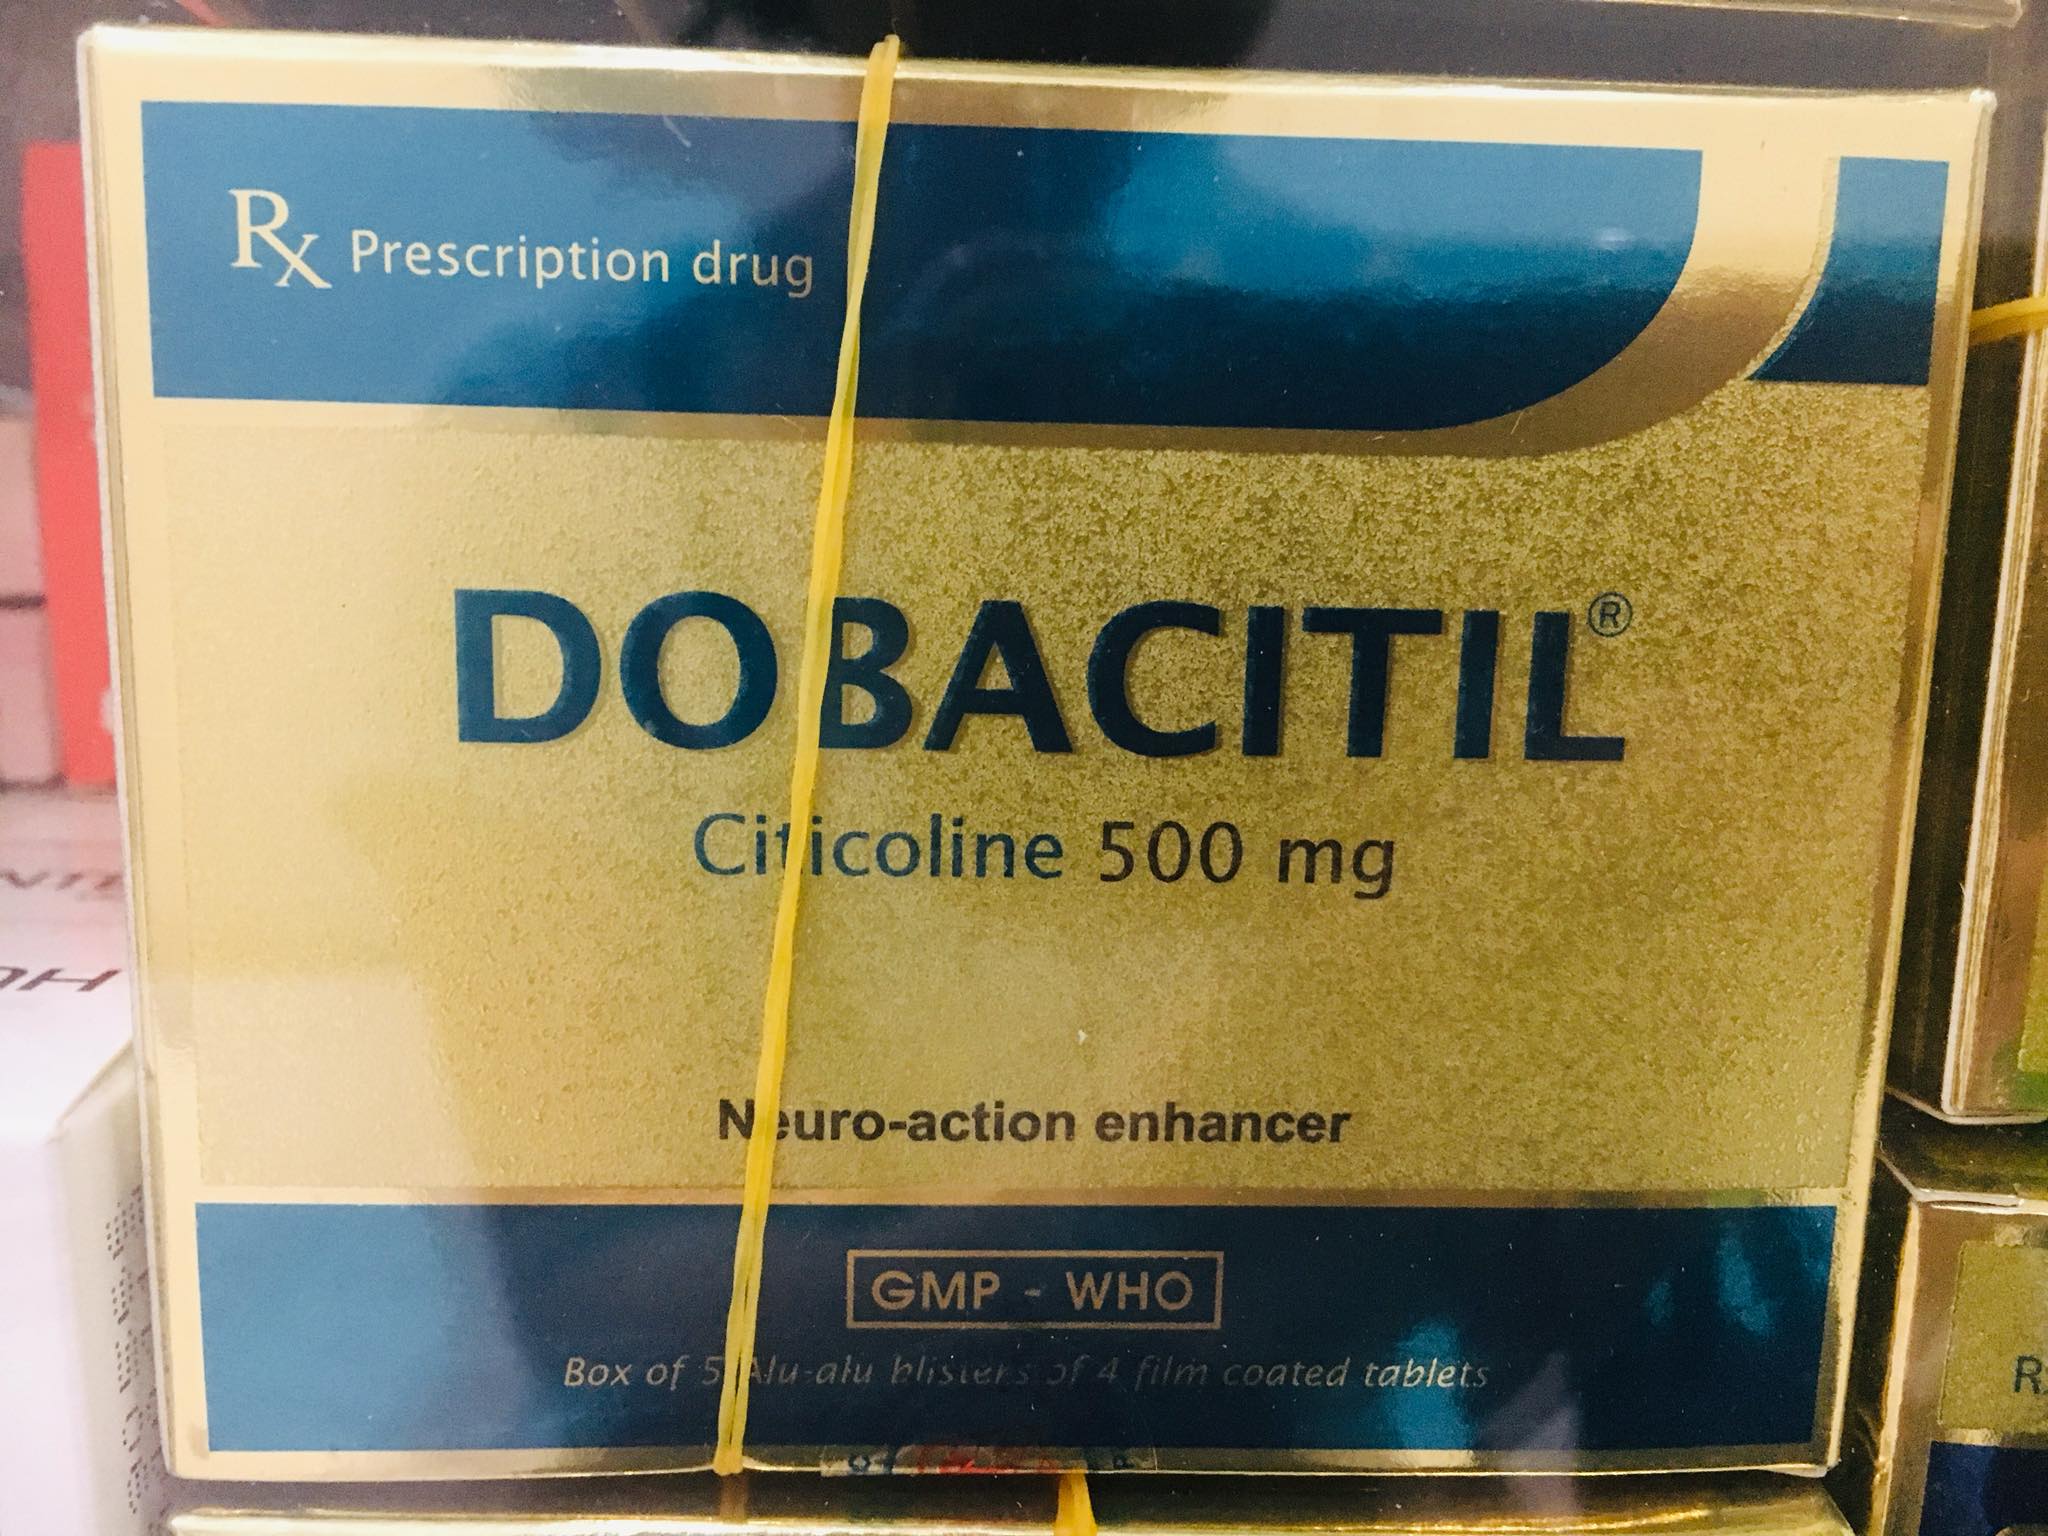 DOBACITIL (Citicoline 500 mg)